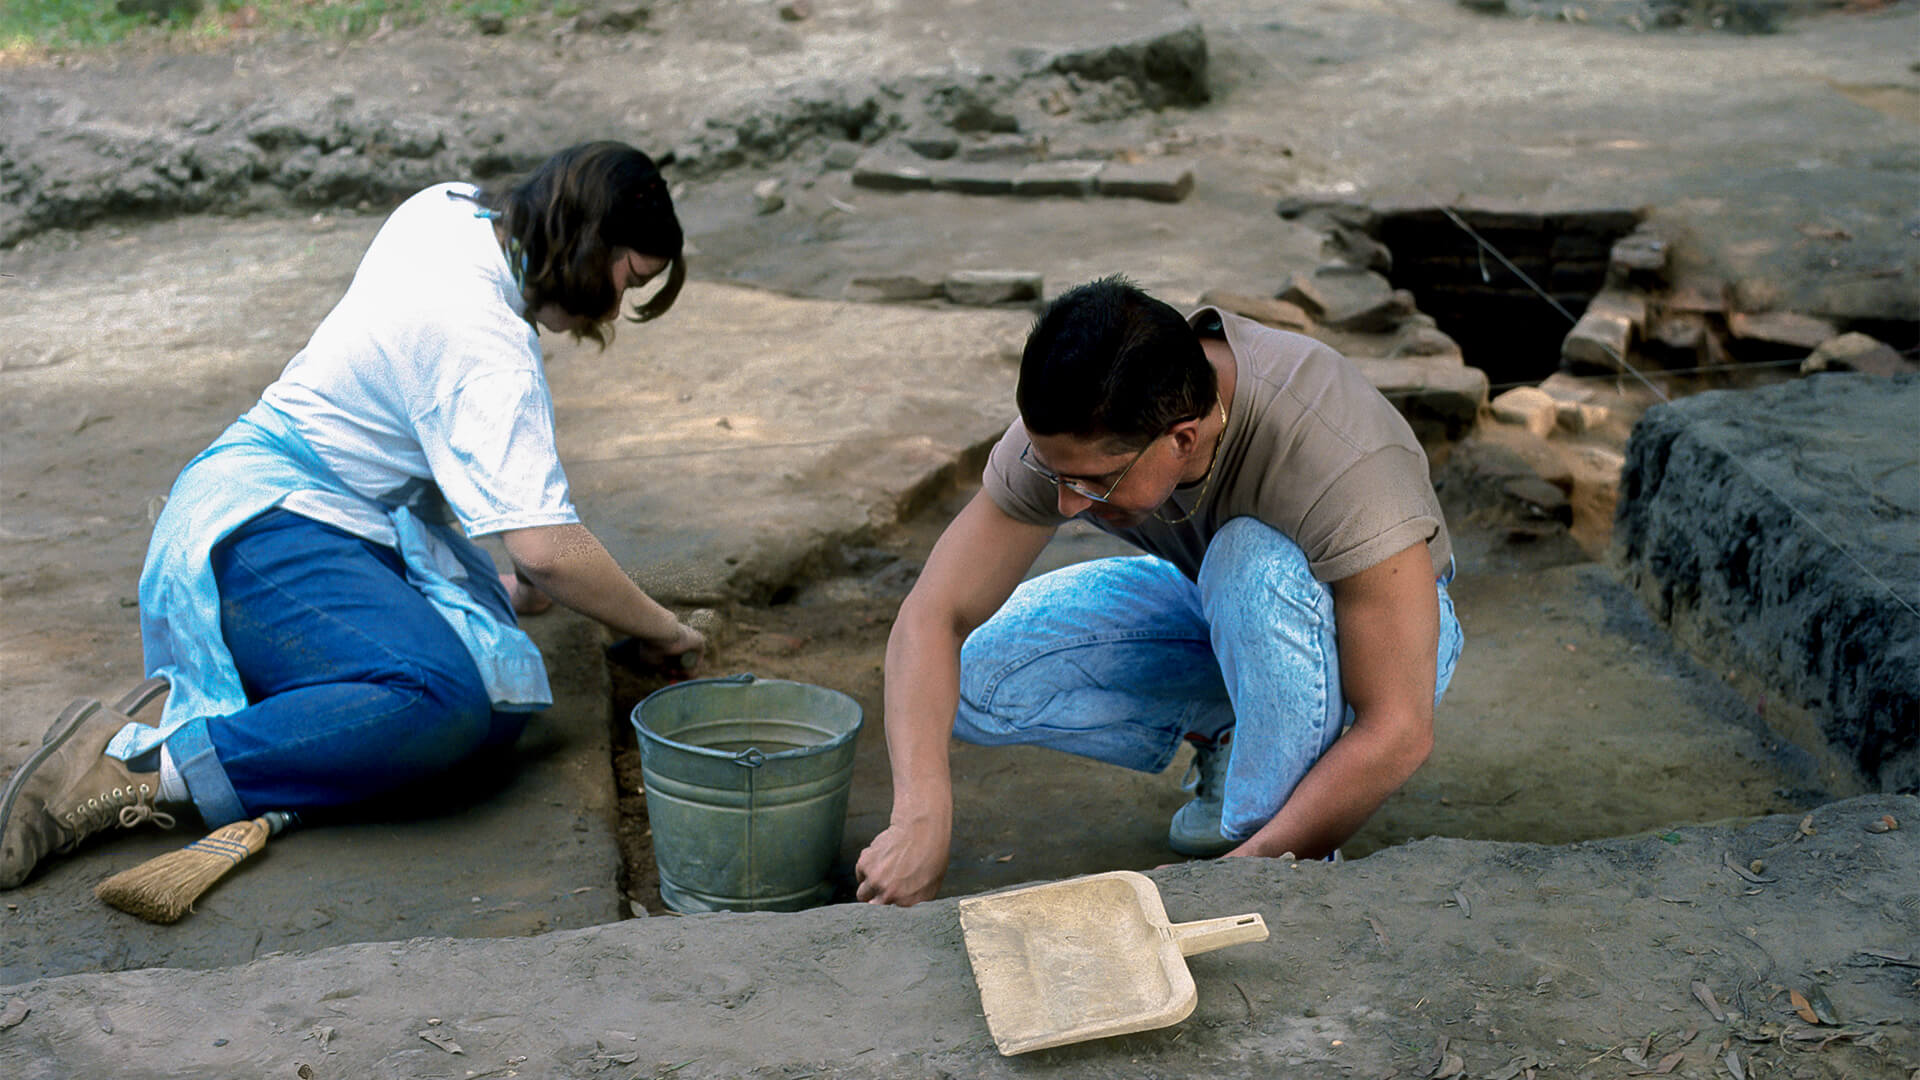 Students excavating